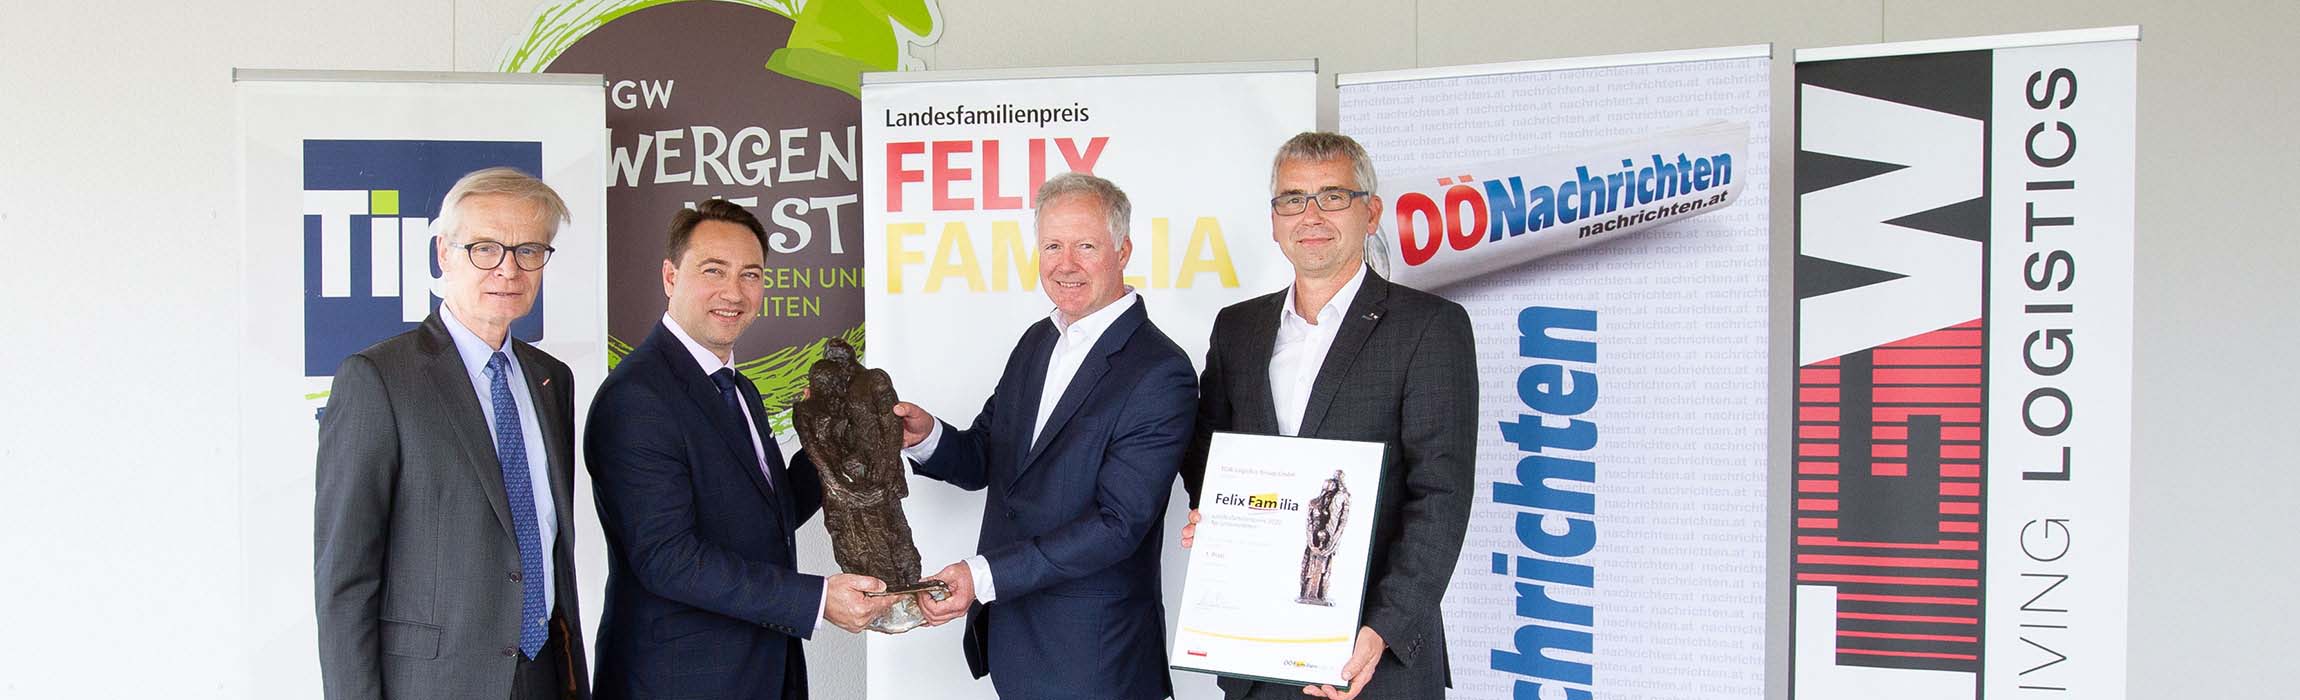 Der oberösterreichische Landesfamilienpreis Felix Familia holt Unternehmen vor den Vorhang, die mit innovativen Projekten die Vereinbarkeit von Beruf und Familie fördern.